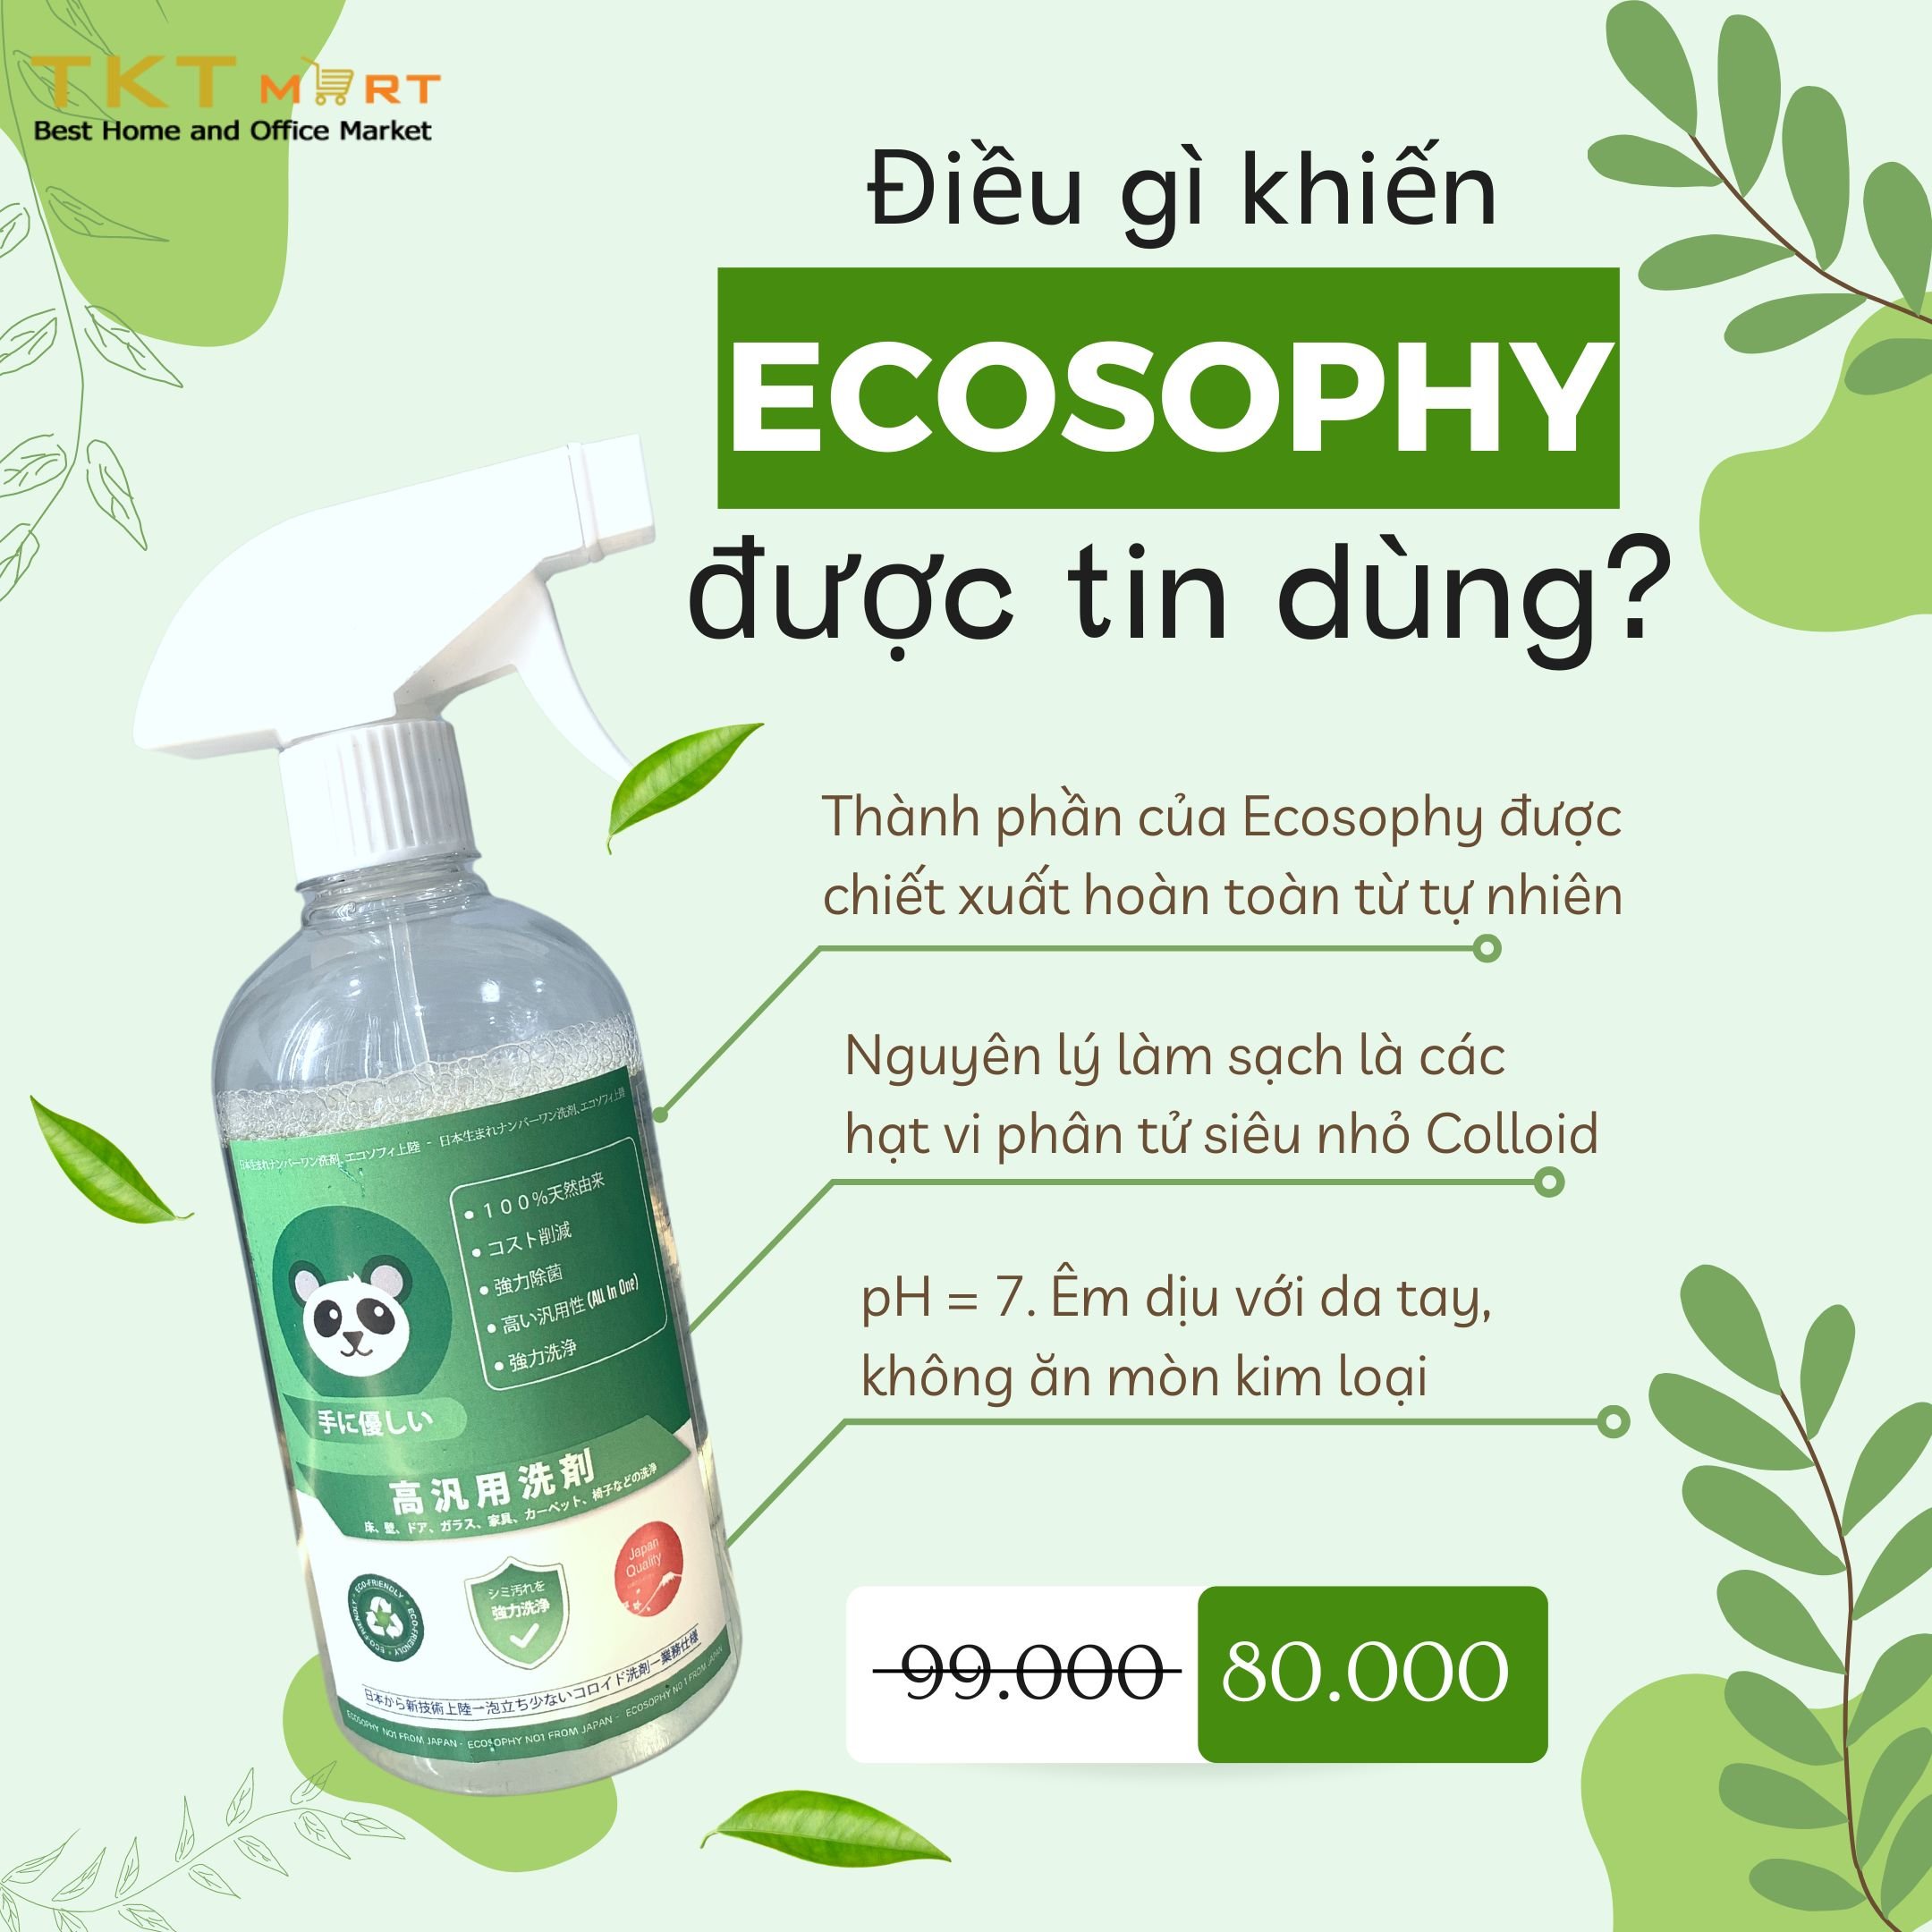 HÌnh ảnh: Bình xịt tẩy rửa đa năng Ecosophy